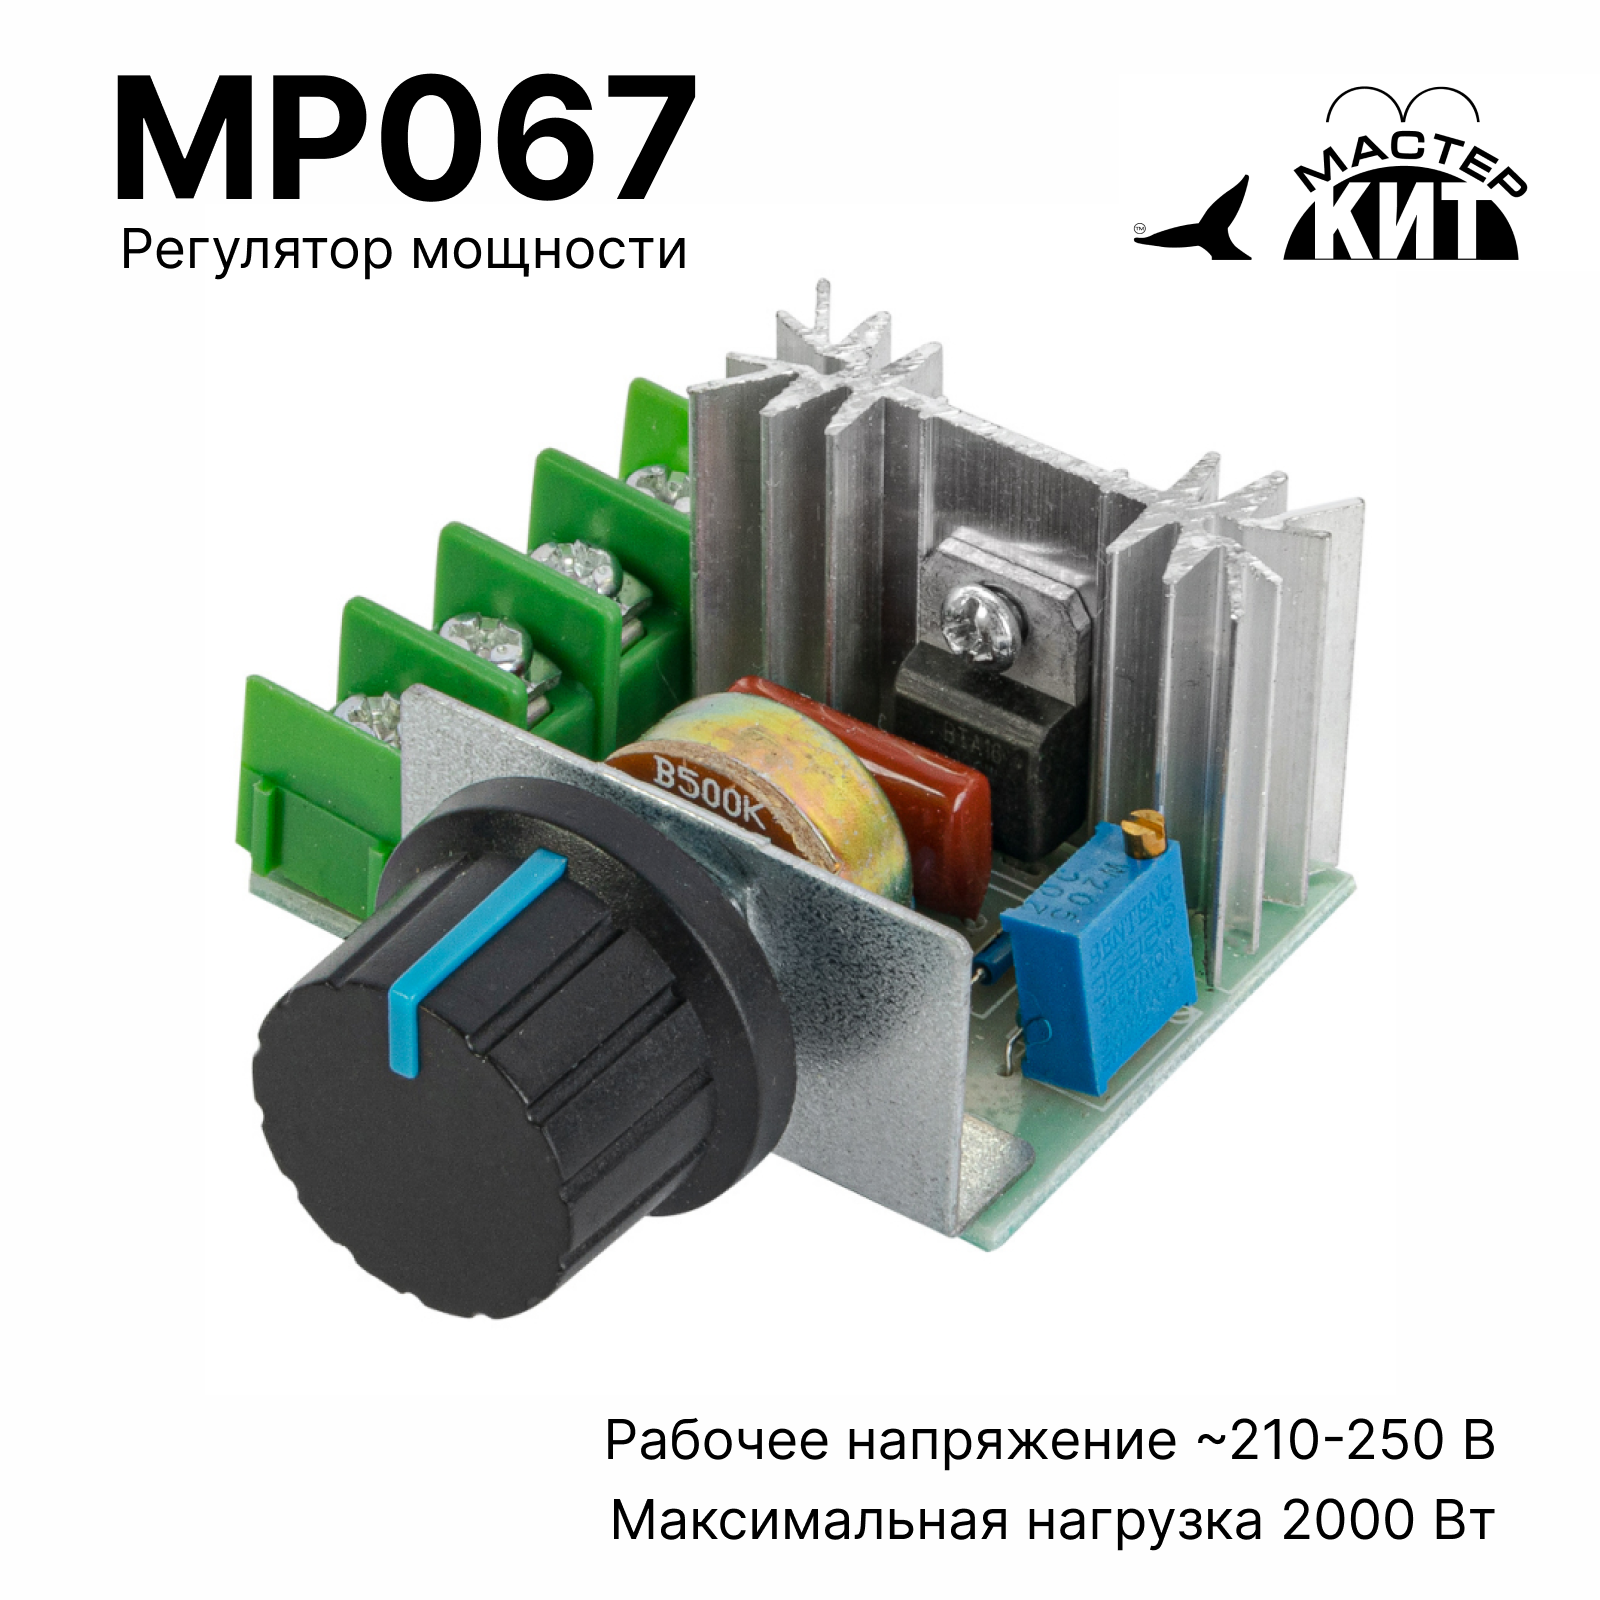 Регулятор мощности Мастер Кит MP067 2 кВт (радиатор, 220В, 9А) бесступенчатый регулятор мощности heliosa